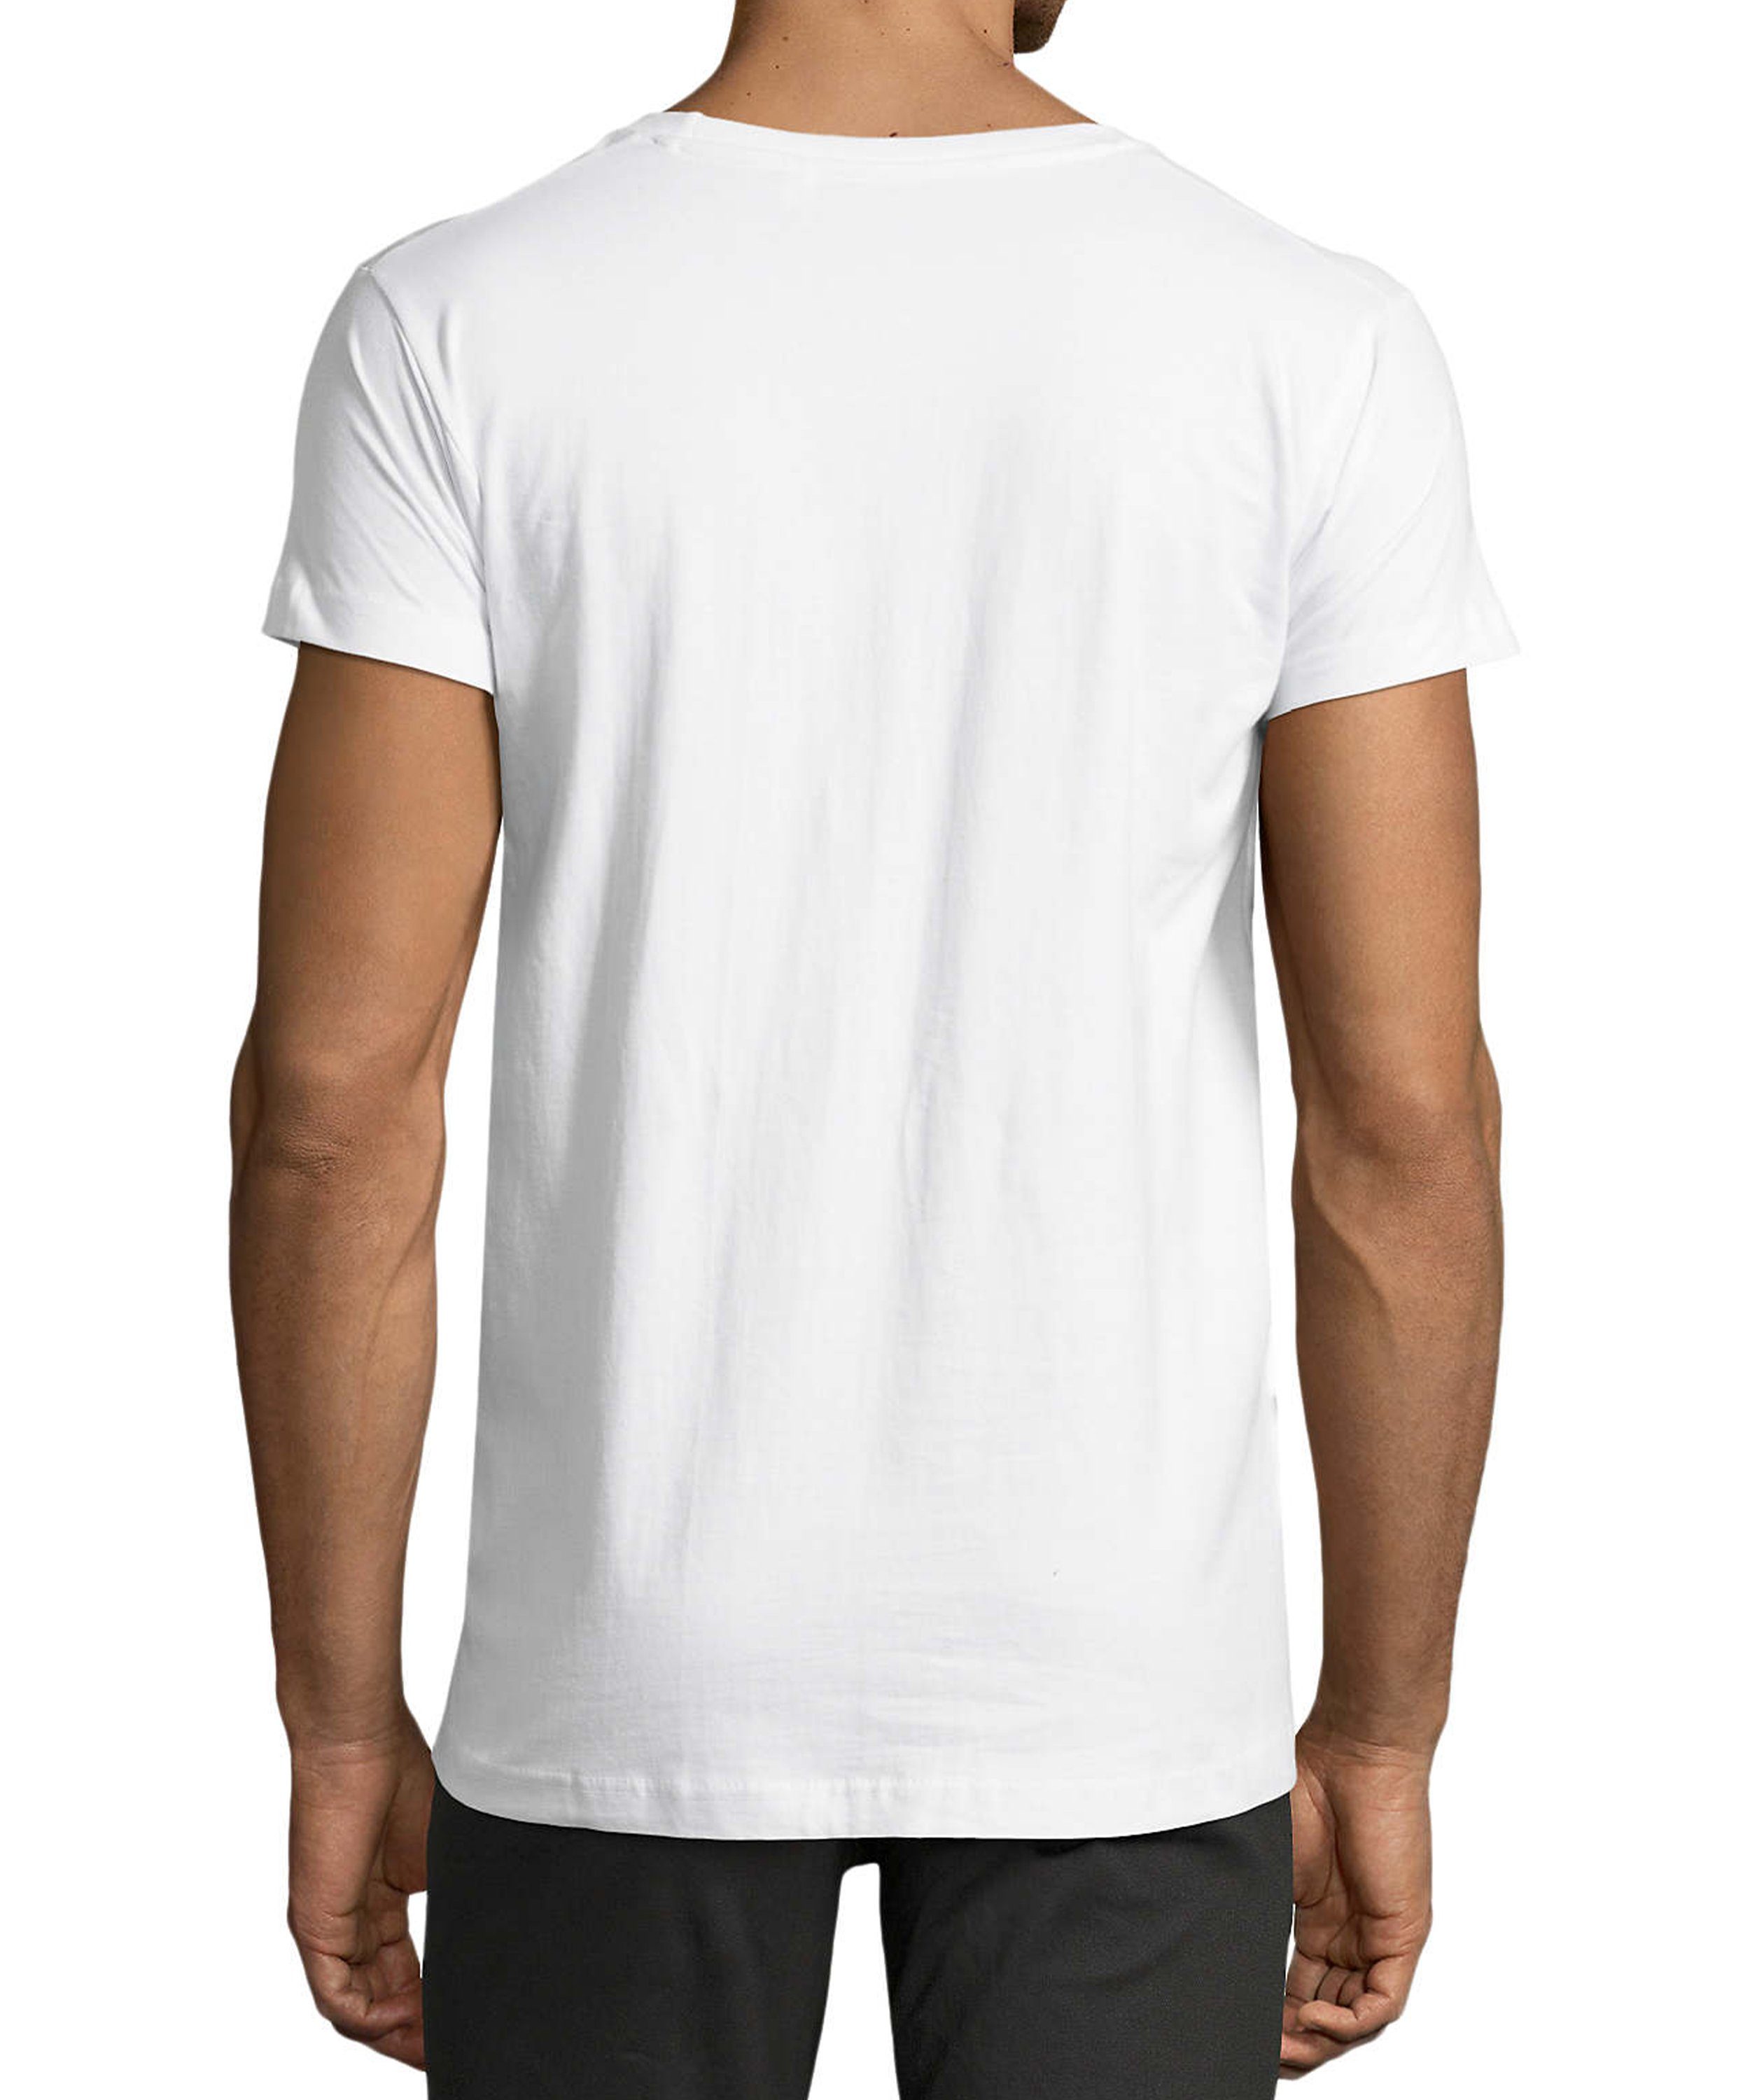 Mann weiss Evolution Shirt Aufdruck Baumwollshirt zum T-Shirt Fit, Print Regular - i312 trinkenden bis Herren MyDesign24 Trinkshirt mit Fun